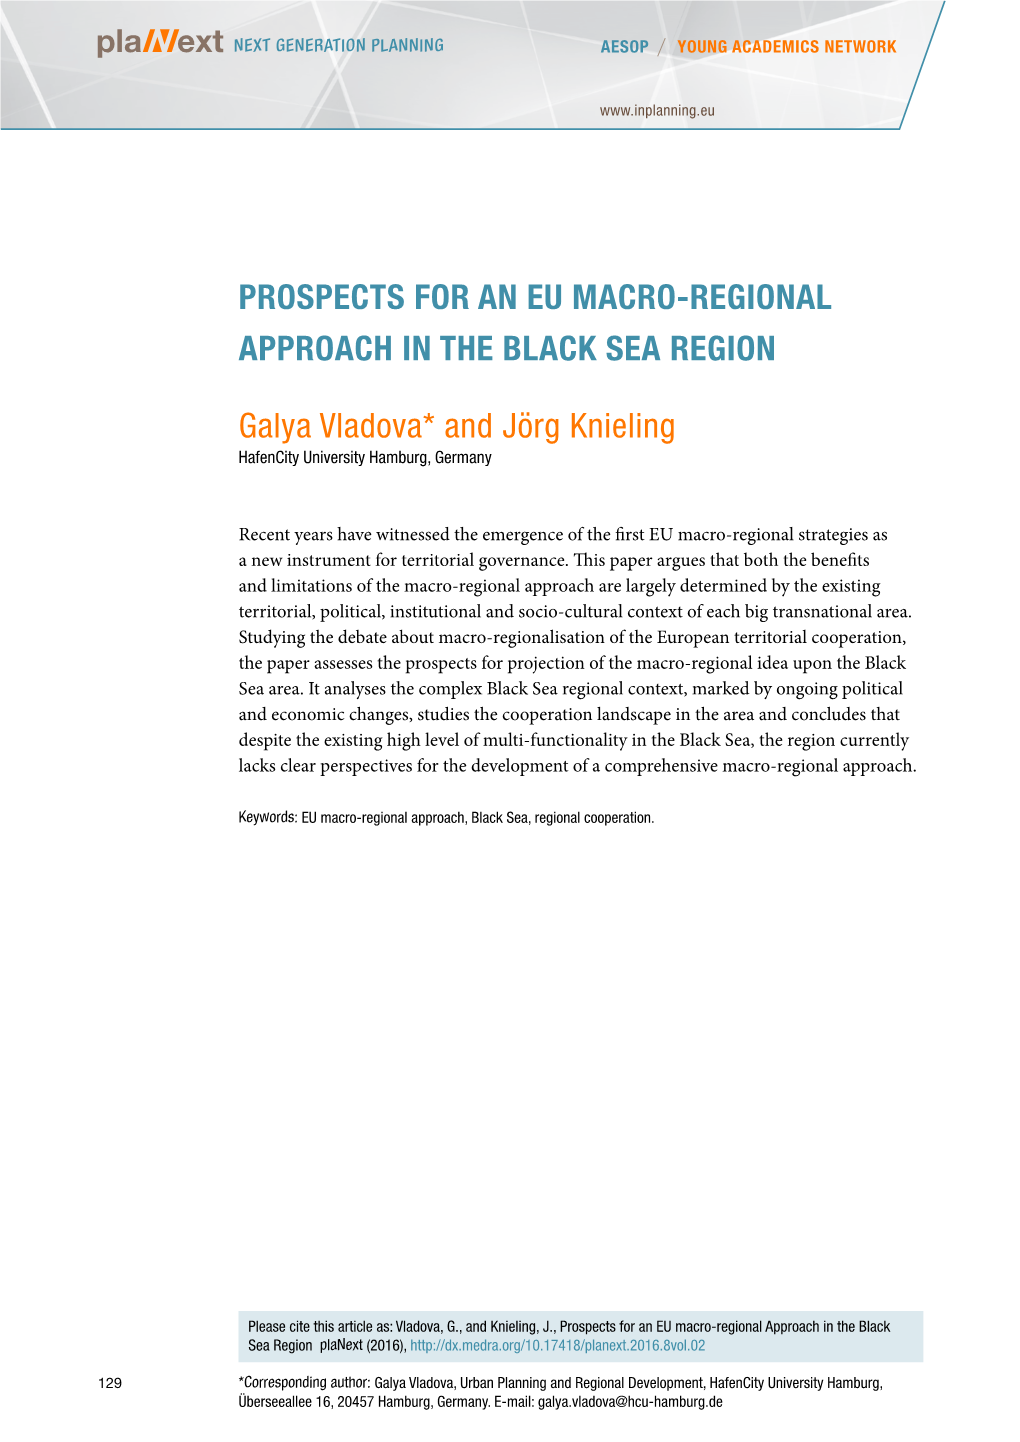 Prospects for an Eu Macro-Regional Approach in the Black Sea Region